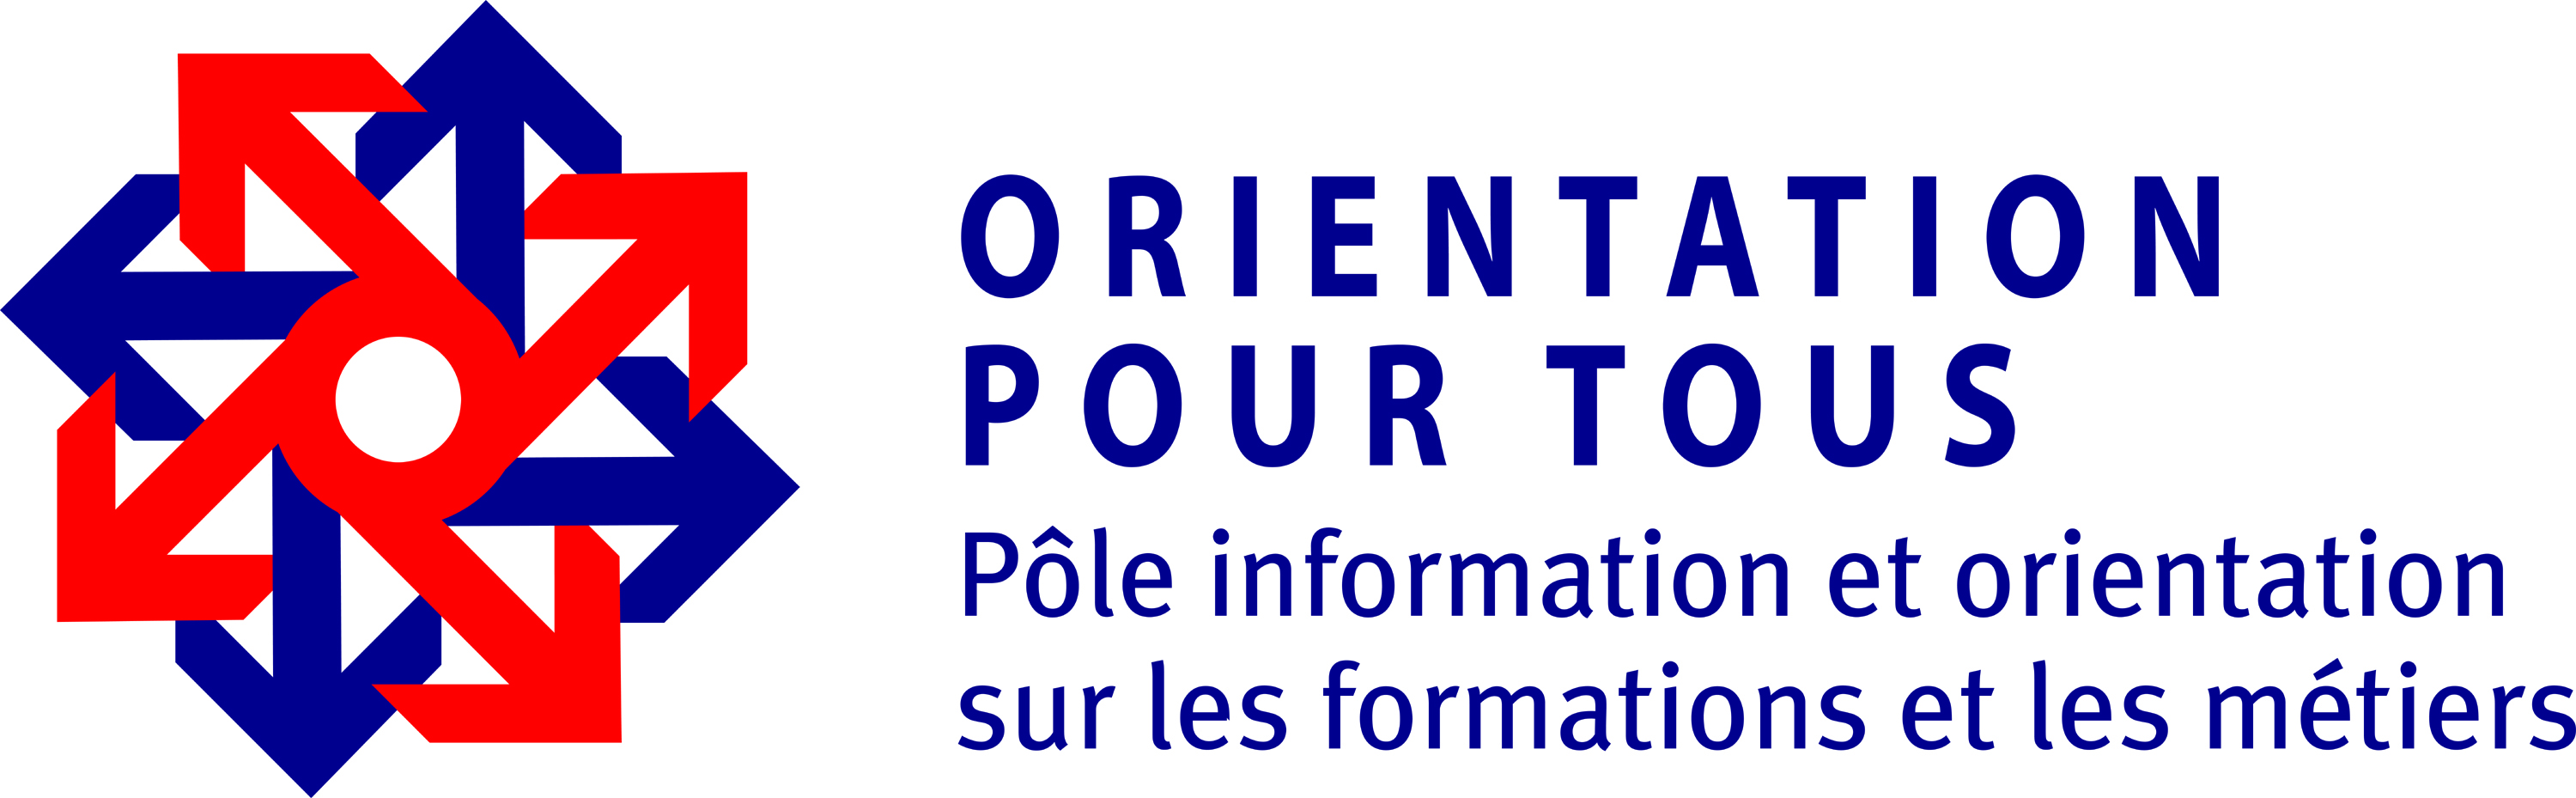 Logo_Orientation_pour_tous.jpg